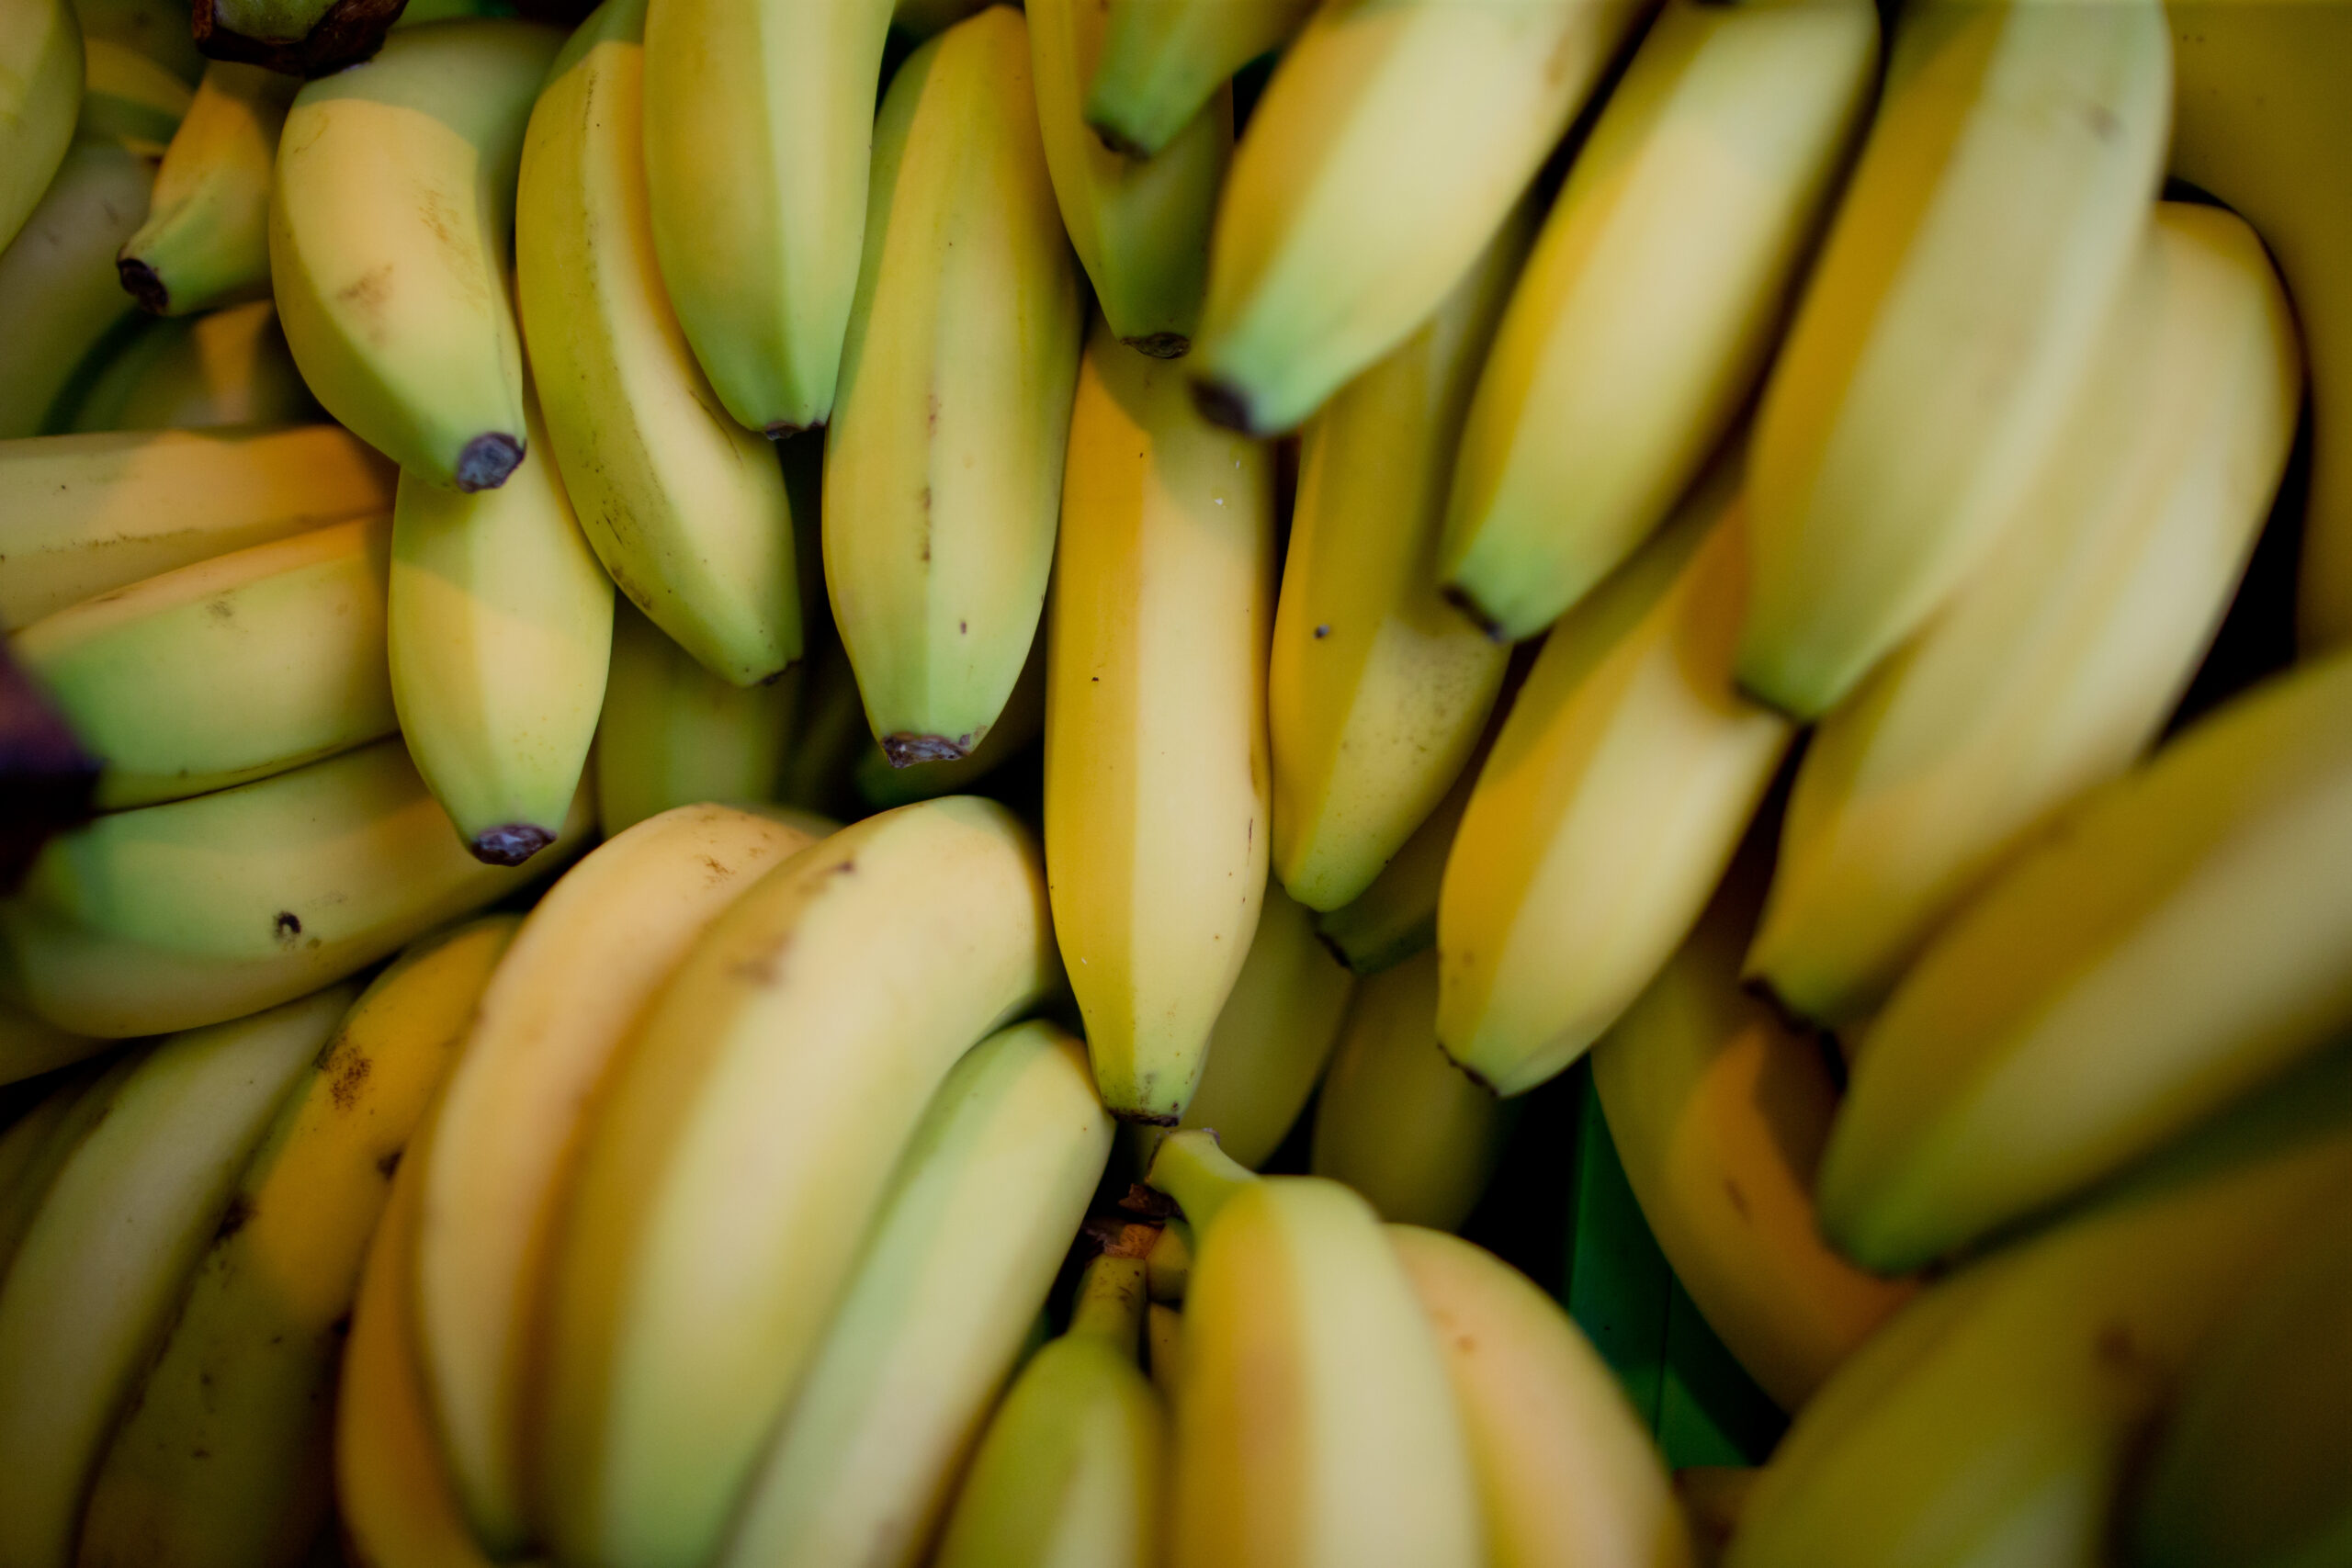 In insgesamt elf Supermärkten in Berlin und Brandenburg wurde Kokain gefunden. Die Drogen waren in Bananenkisten versteckt.